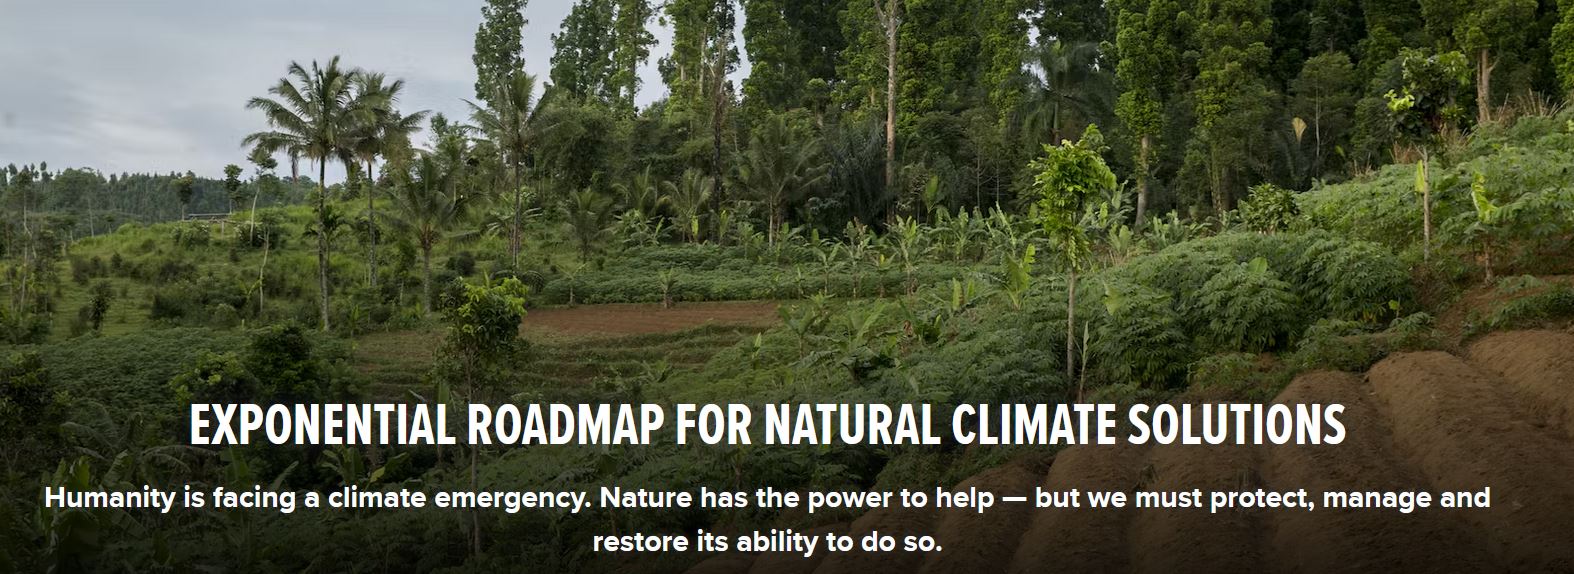 Die Natur als Schlüssel für eine klimasichere Zukunft: Neue Exponential Roadmap-Initiative für natürliche Klimalösungen